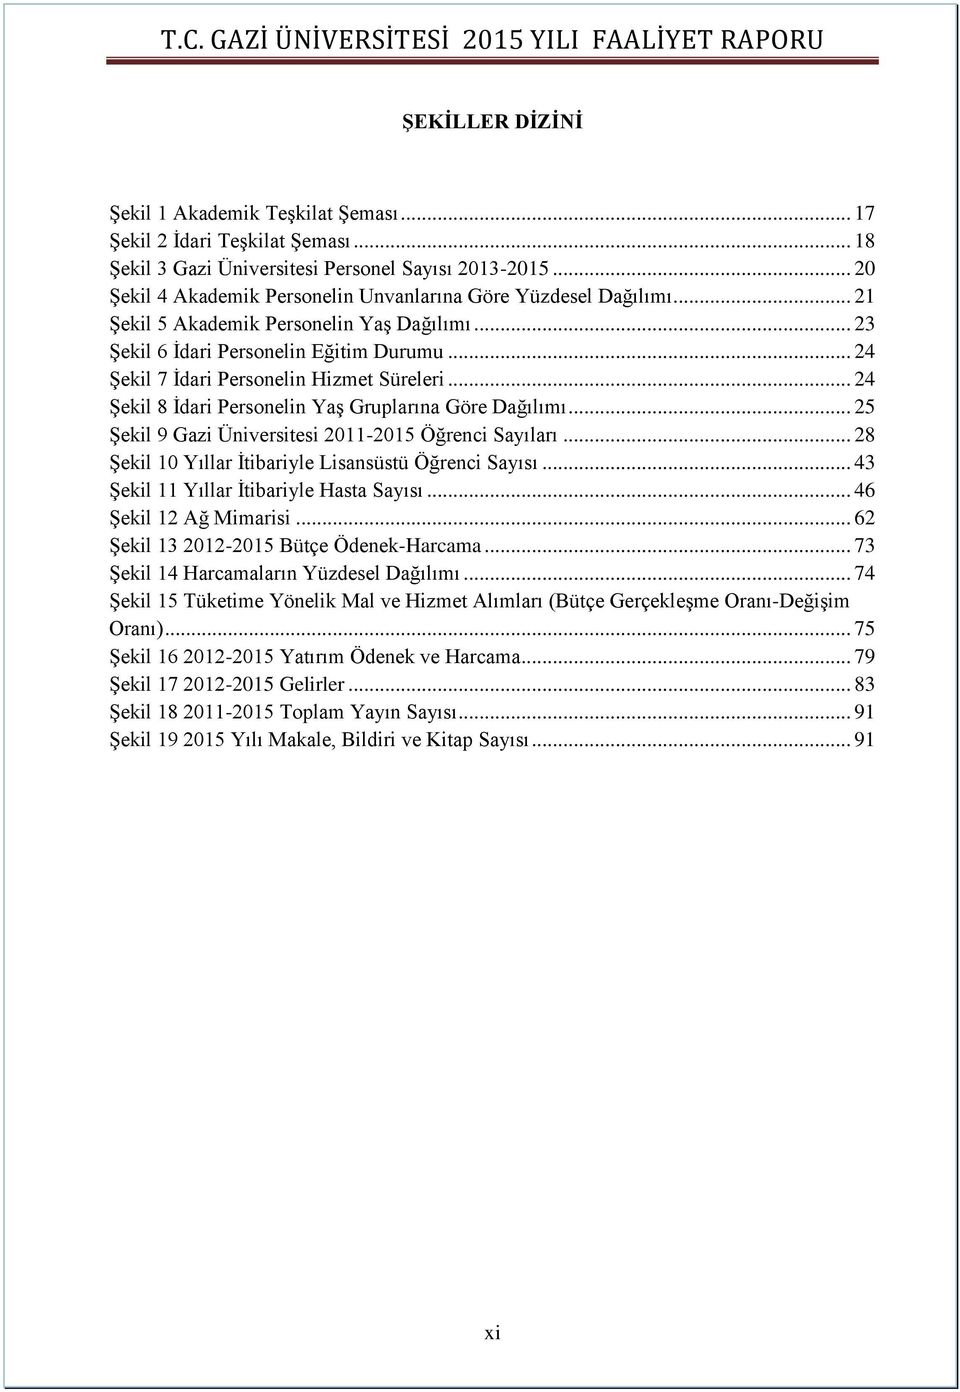 .. 24 Şekil 7 İdari Personelin Hizmet Süreleri... 24 Şekil 8 İdari Personelin Yaş Gruplarına Göre Dağılımı... 25 Şekil 9 Gazi Üniversitesi 2011-2015 Öğrenci Sayıları.